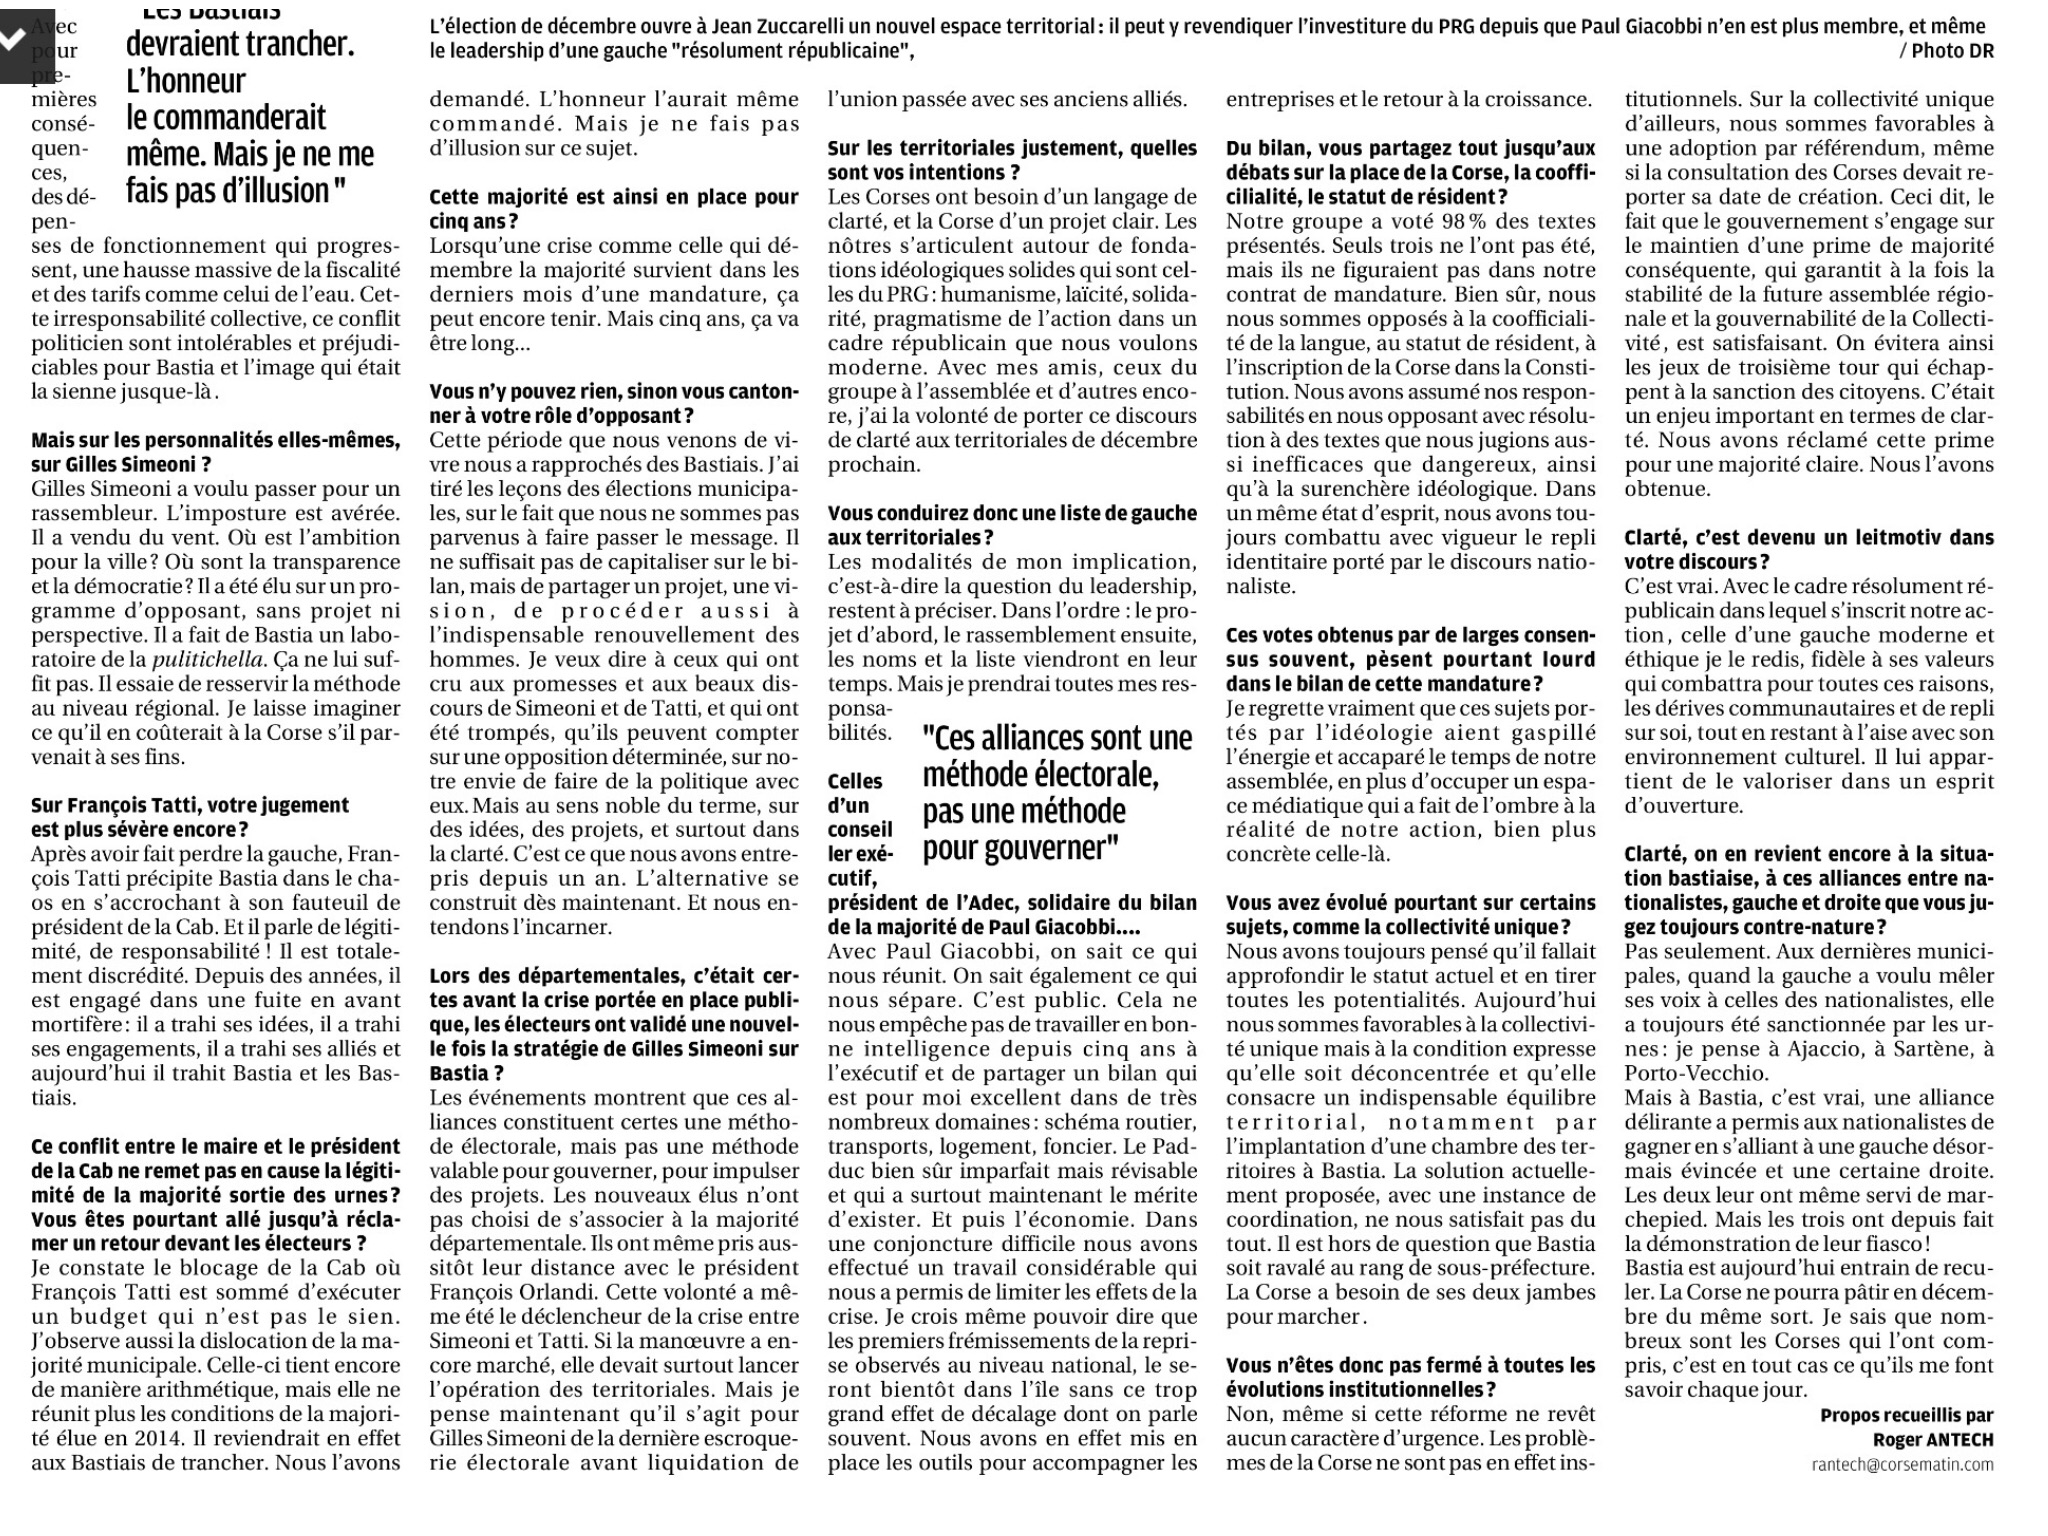 Mon interview paru dans le Corse Matin du dimanche 26 avril 2014